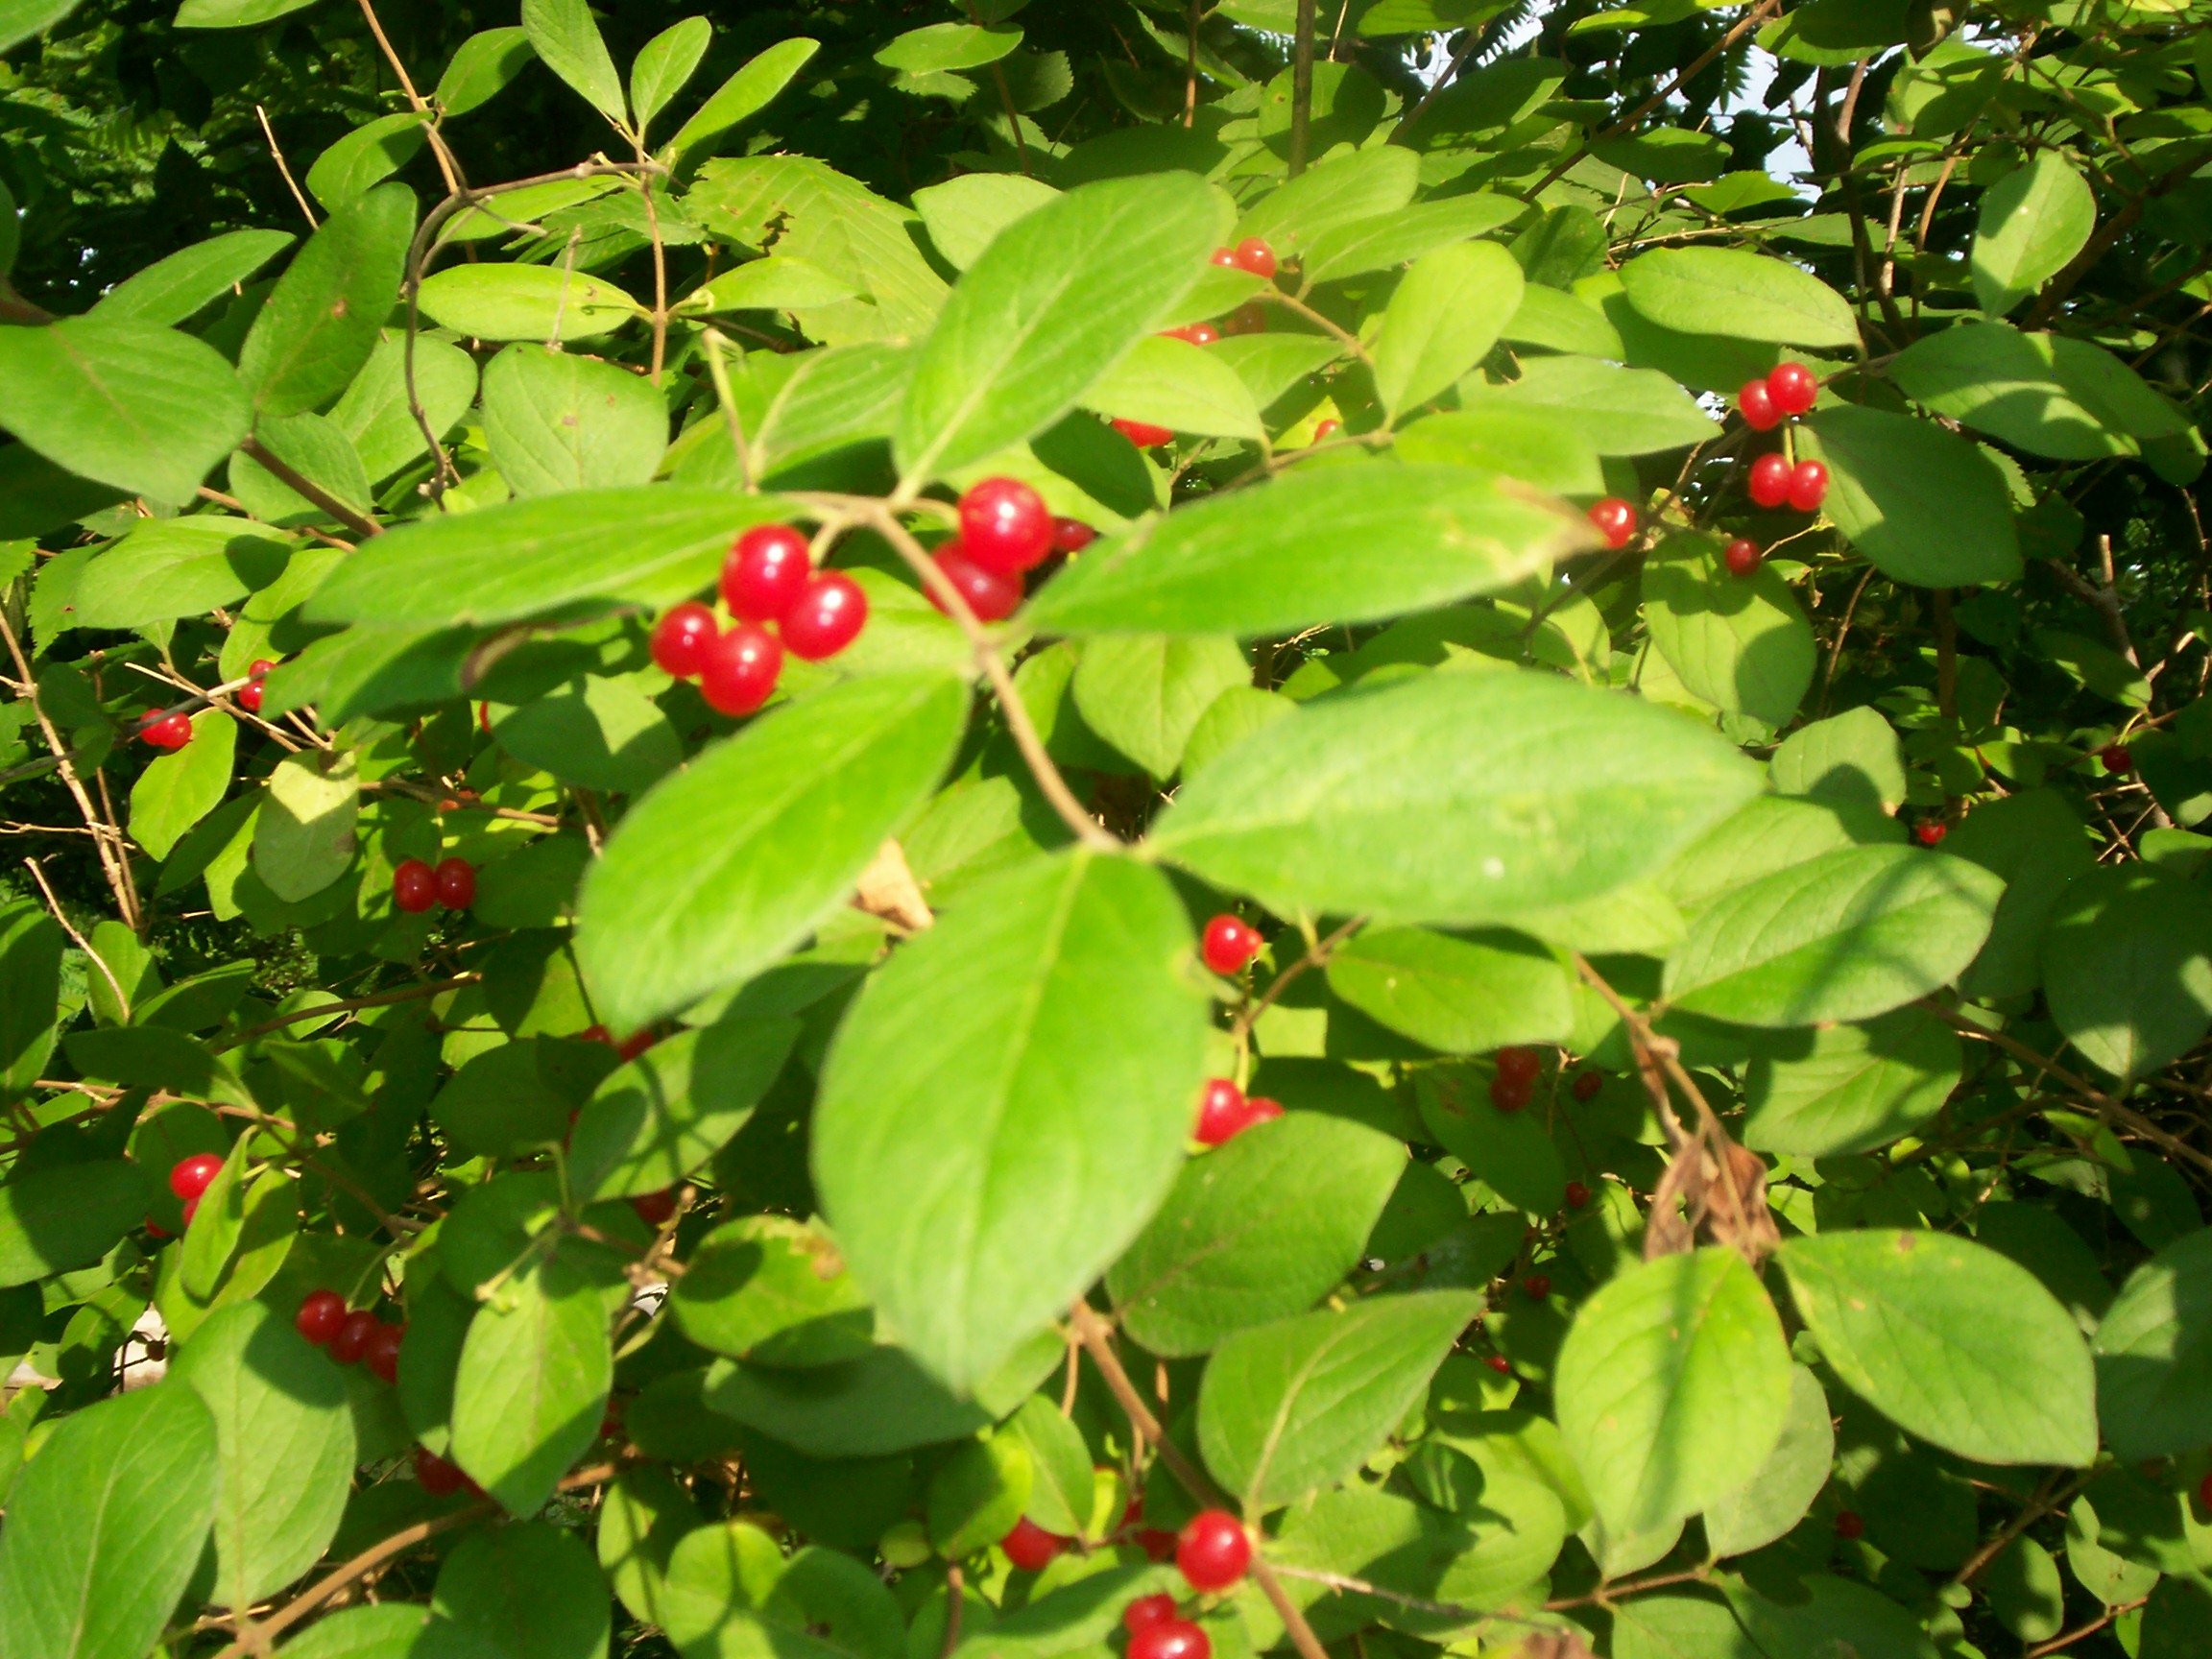 Wild Berries - Ask an Expert